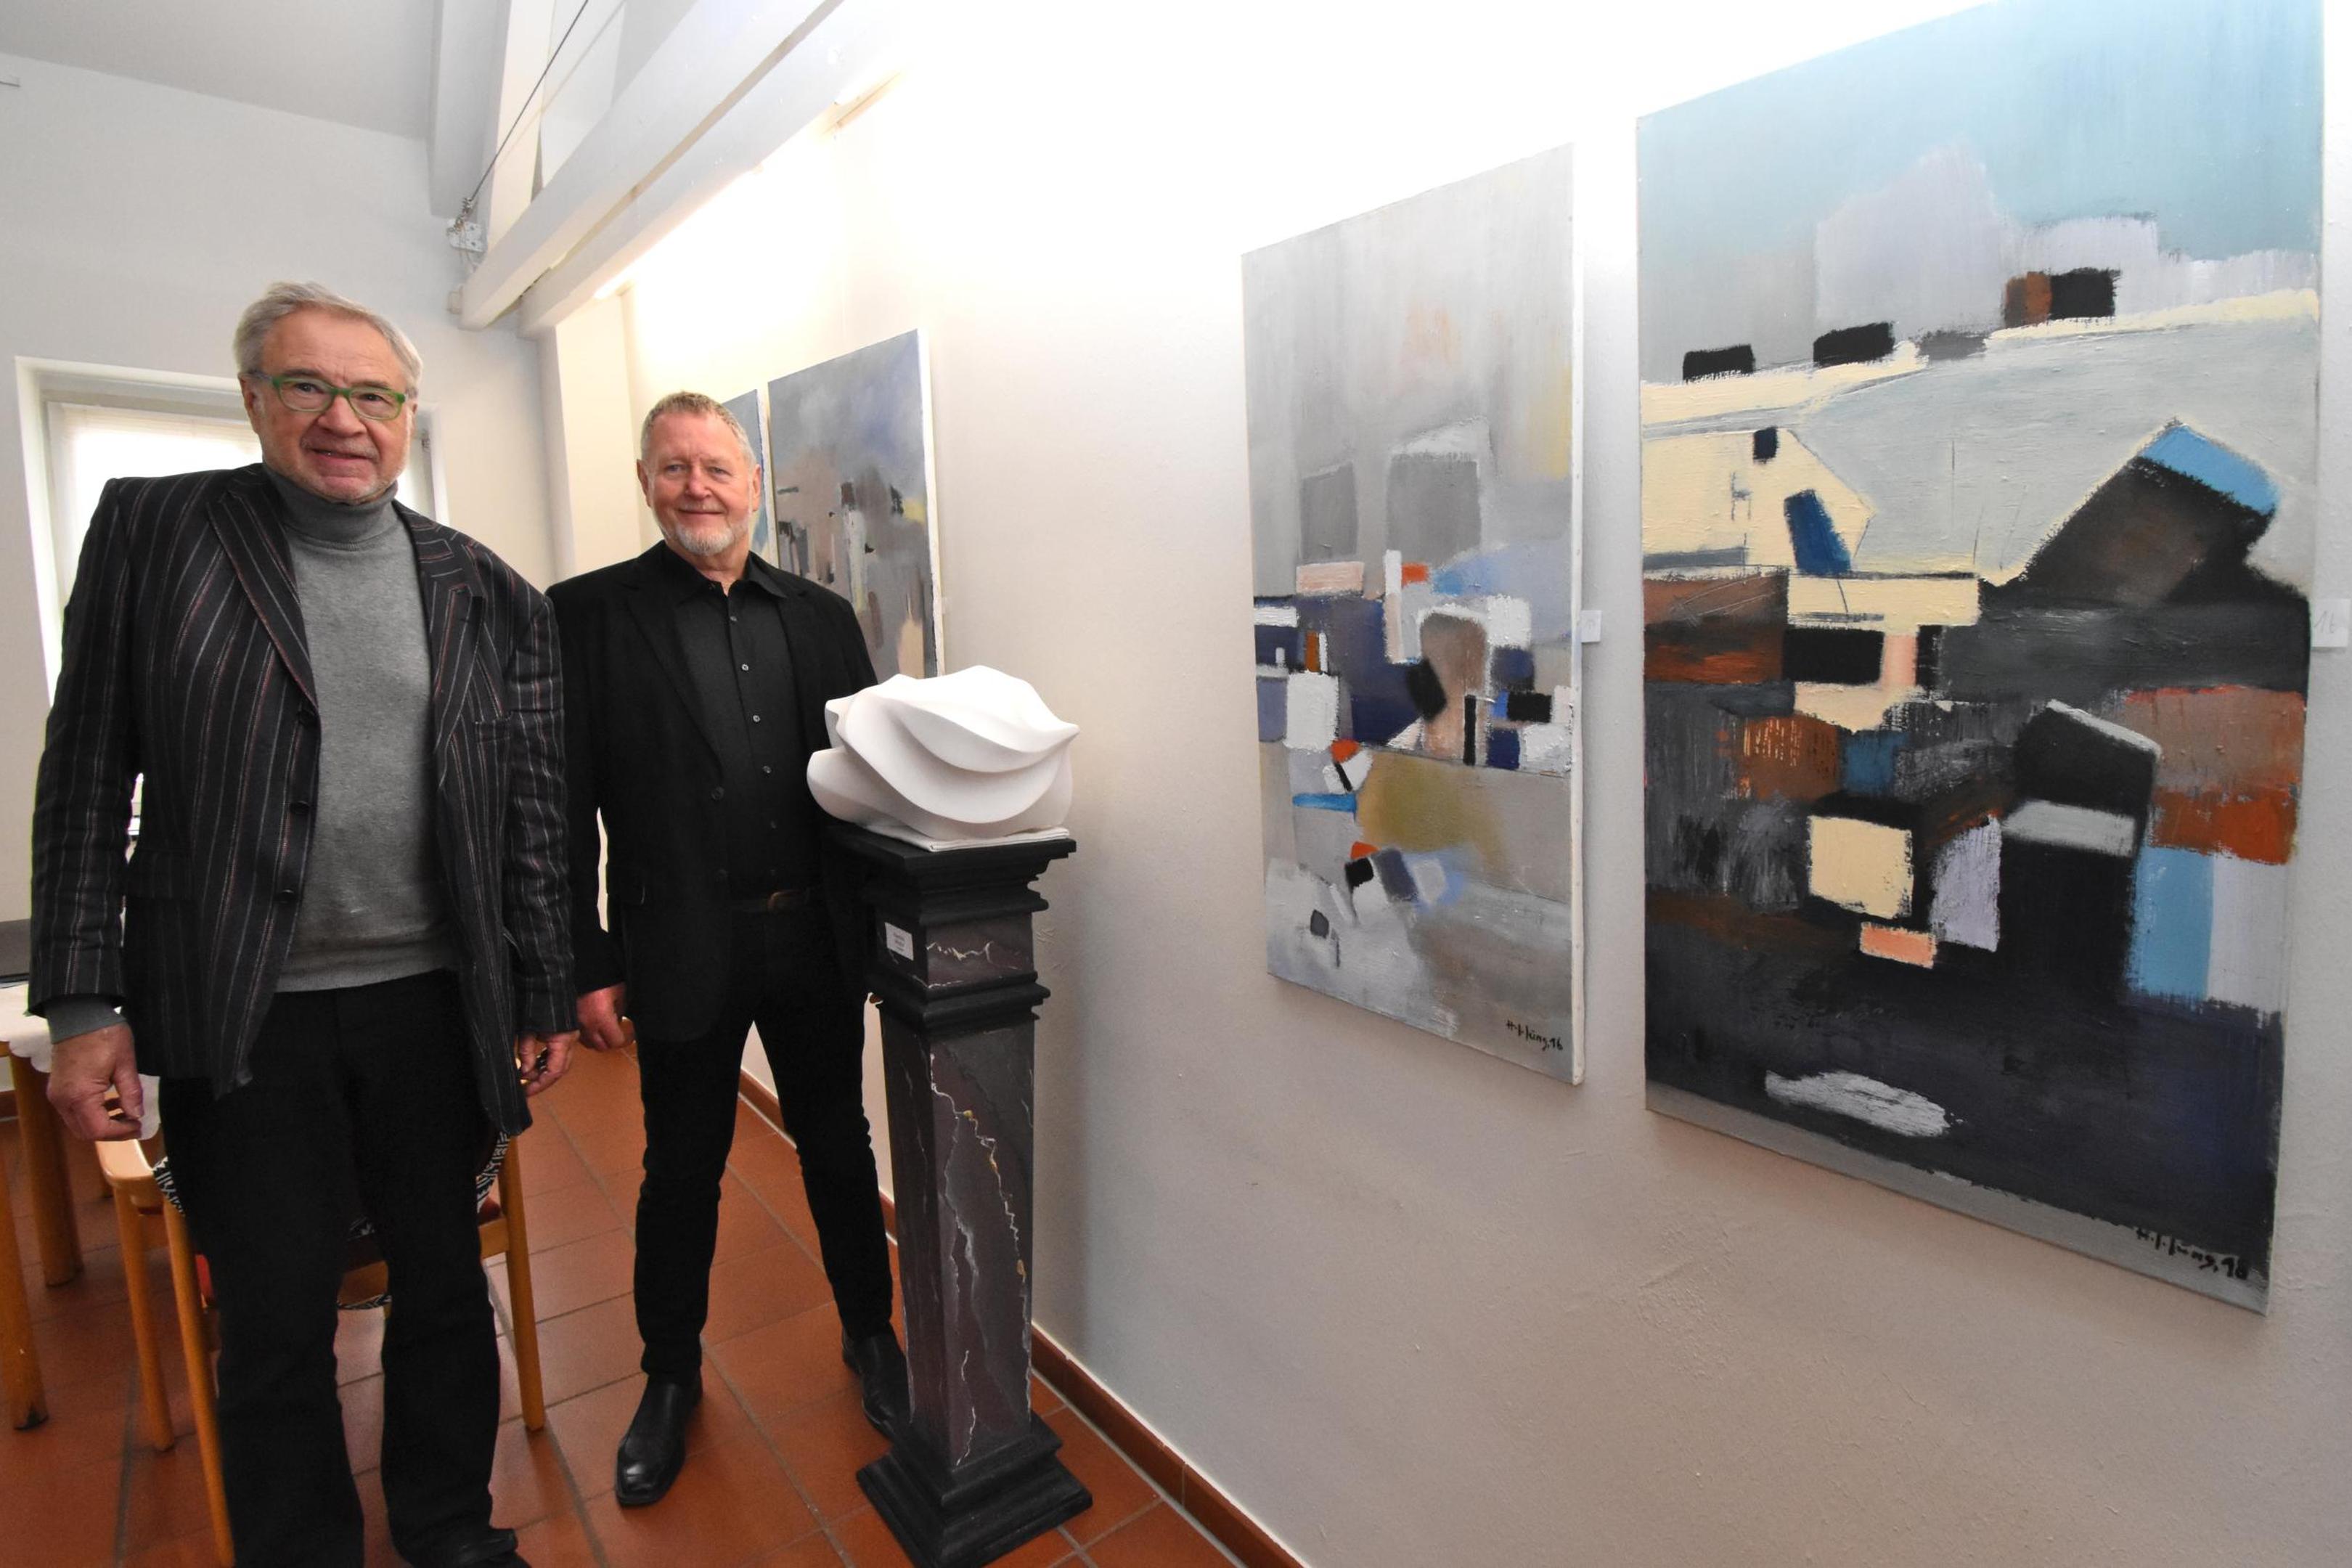 Der Maler Jochen Jung (l.) und der Bildhauer Hans Georg Fabry (r.) zeigen in einer Ausstellung des Vereins GK KULTURgut! im Haus Basten in Geilenkirchen ihre Gemälde und Skulpturen. 